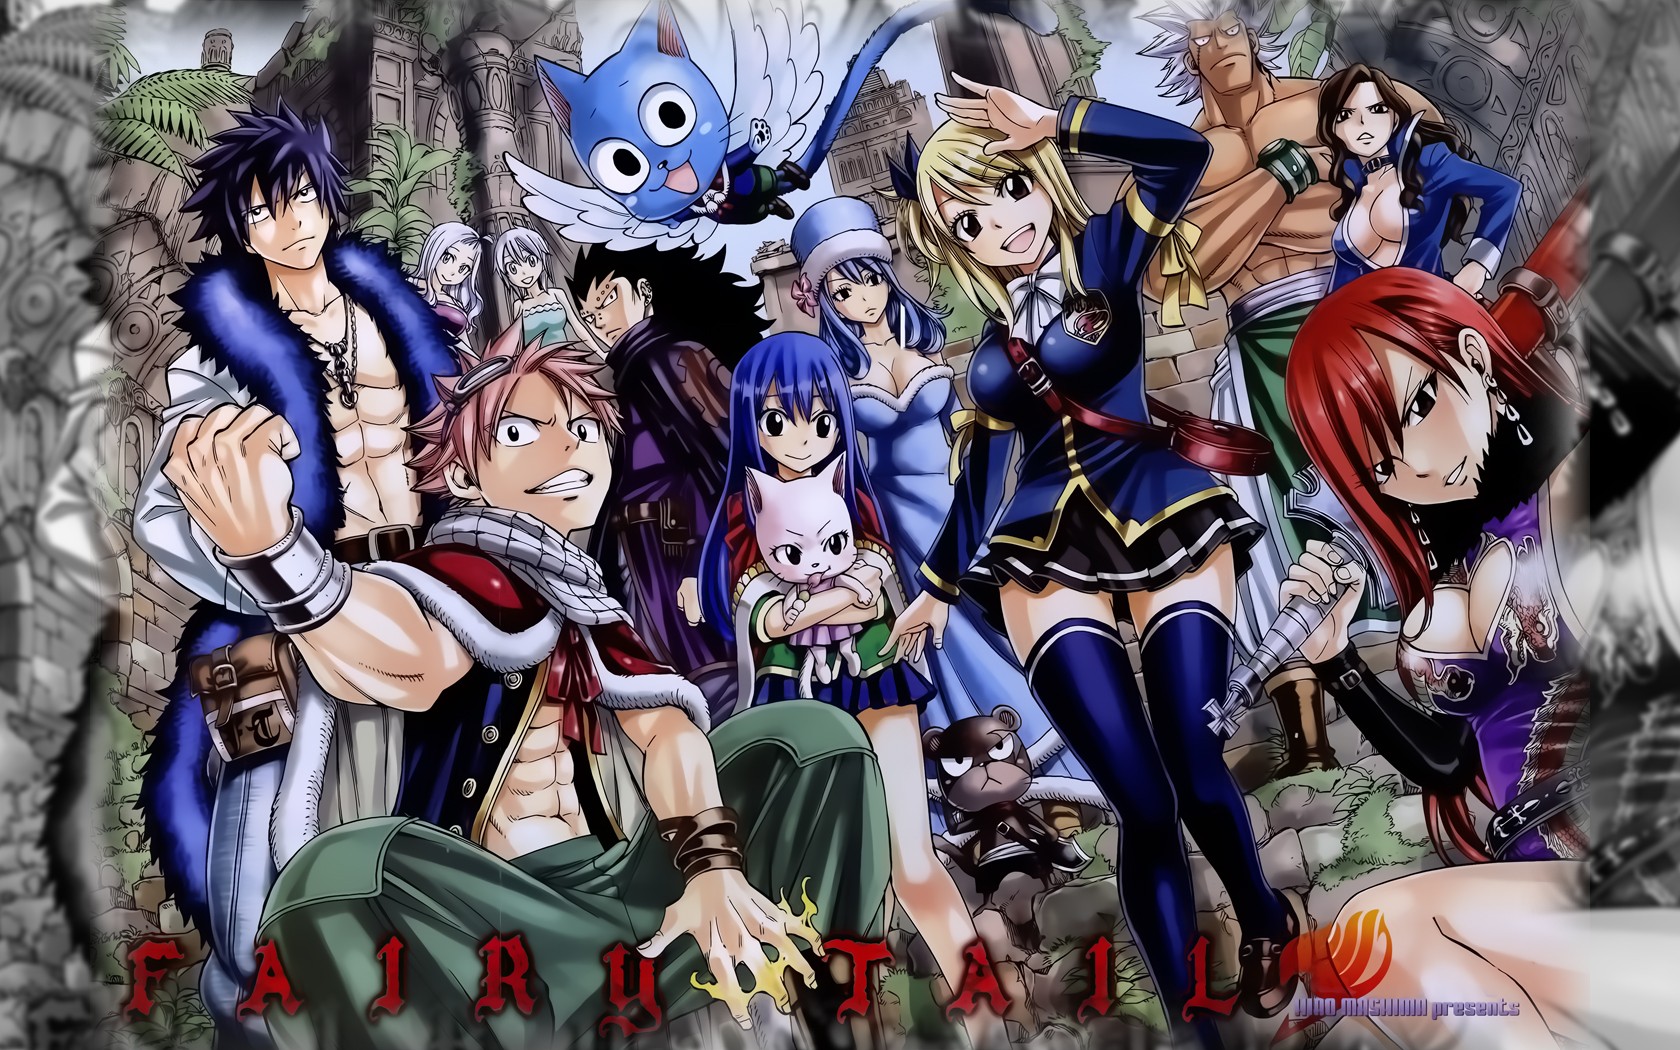 Fairy Tail - Anime Wallpaper (32076301) - Fanpop